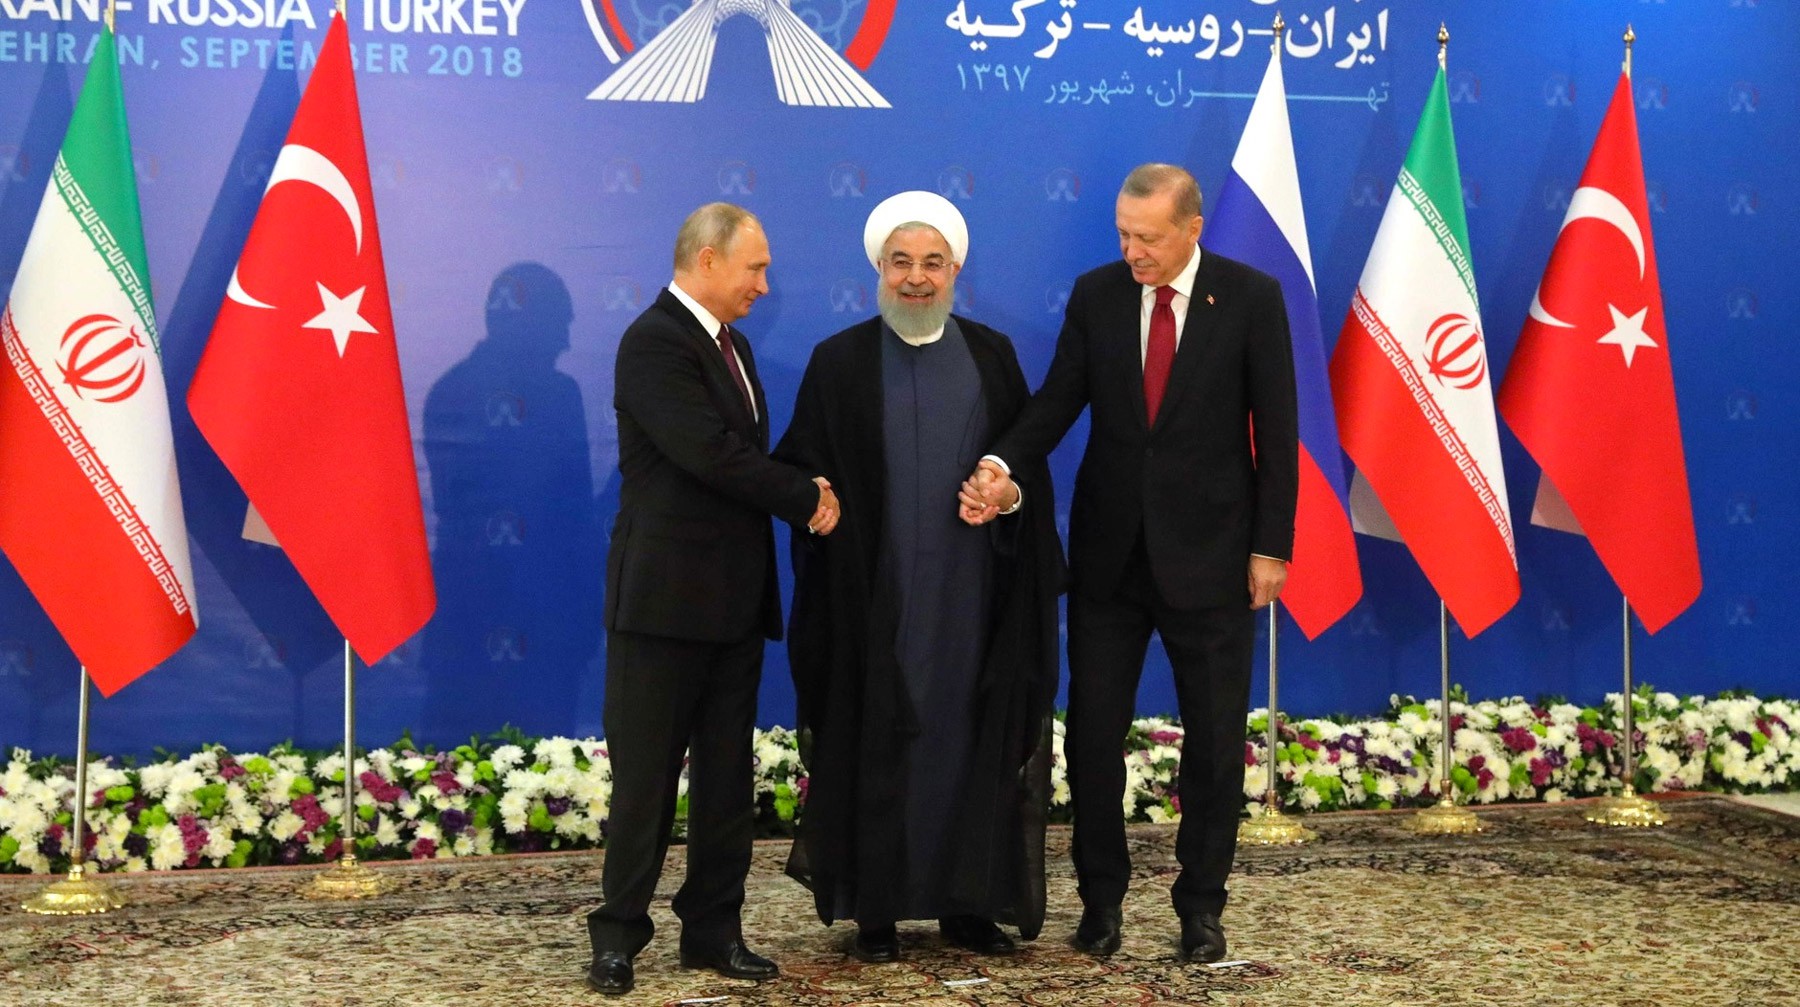 Dailystorm - «Освобождение Идлиба уже идет». Путин, Роухани и Эрдоган призвали ИГ* к разоружению